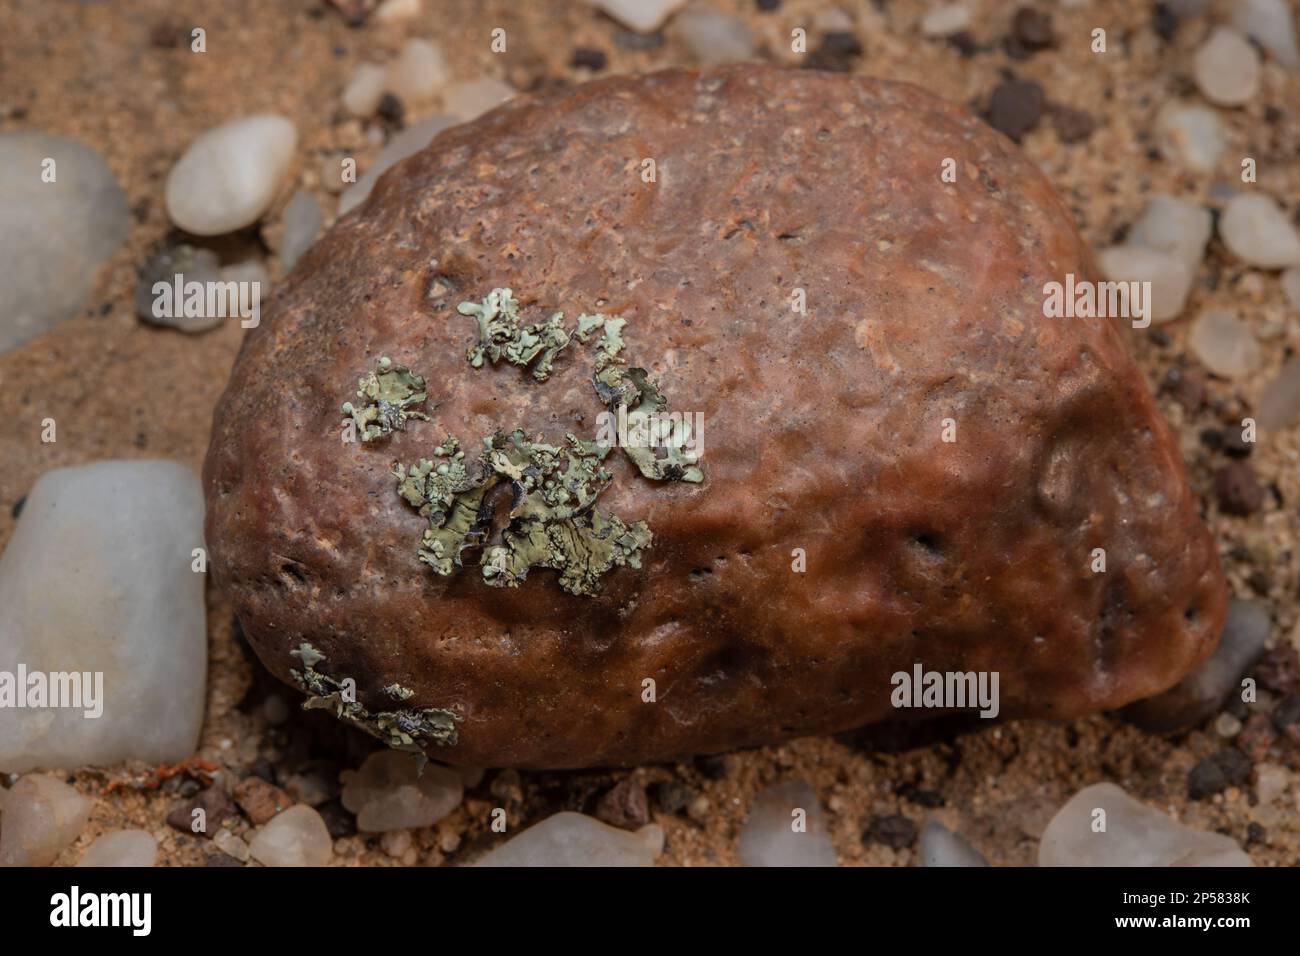 Licheni del deserto epilitico, licheni del foliosio, Xanthoparmelia walteri, Parmeliaceae, deserto del Namib, Namibia, Africa Foto Stock